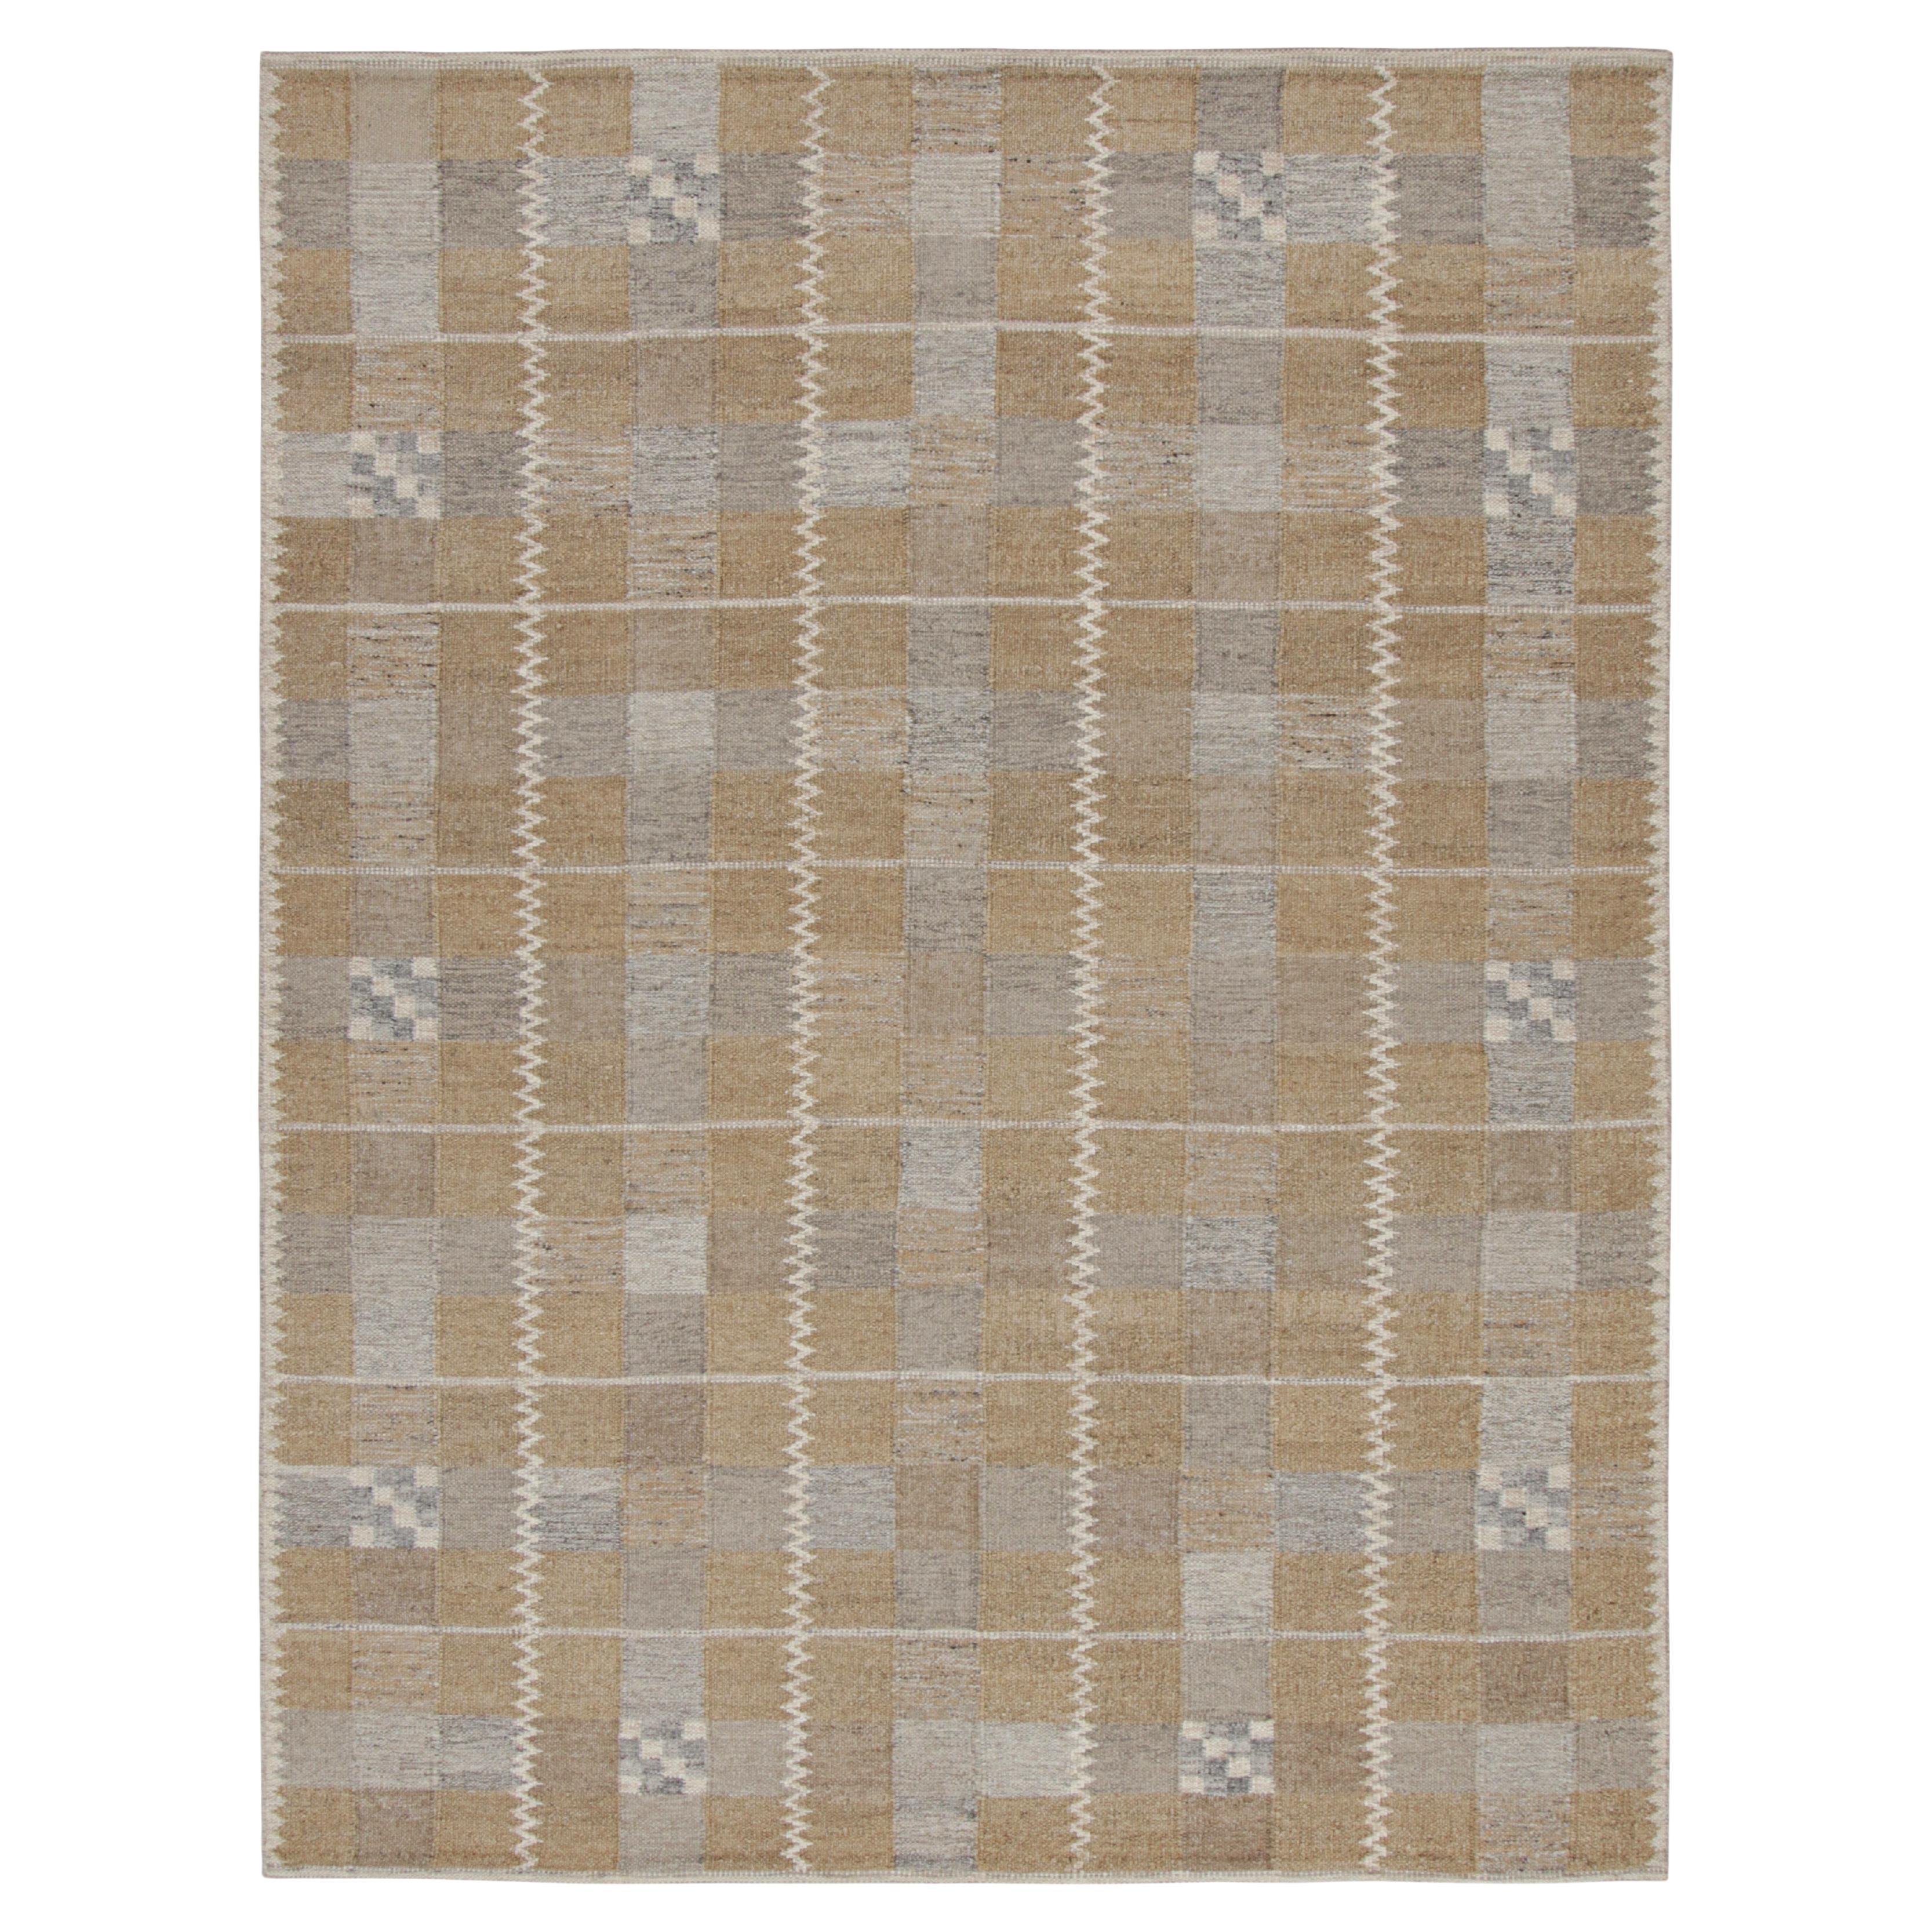 Rug & Kilim's Teppich im skandinavischen Stil mit braunem und grauem geometrischem Muster